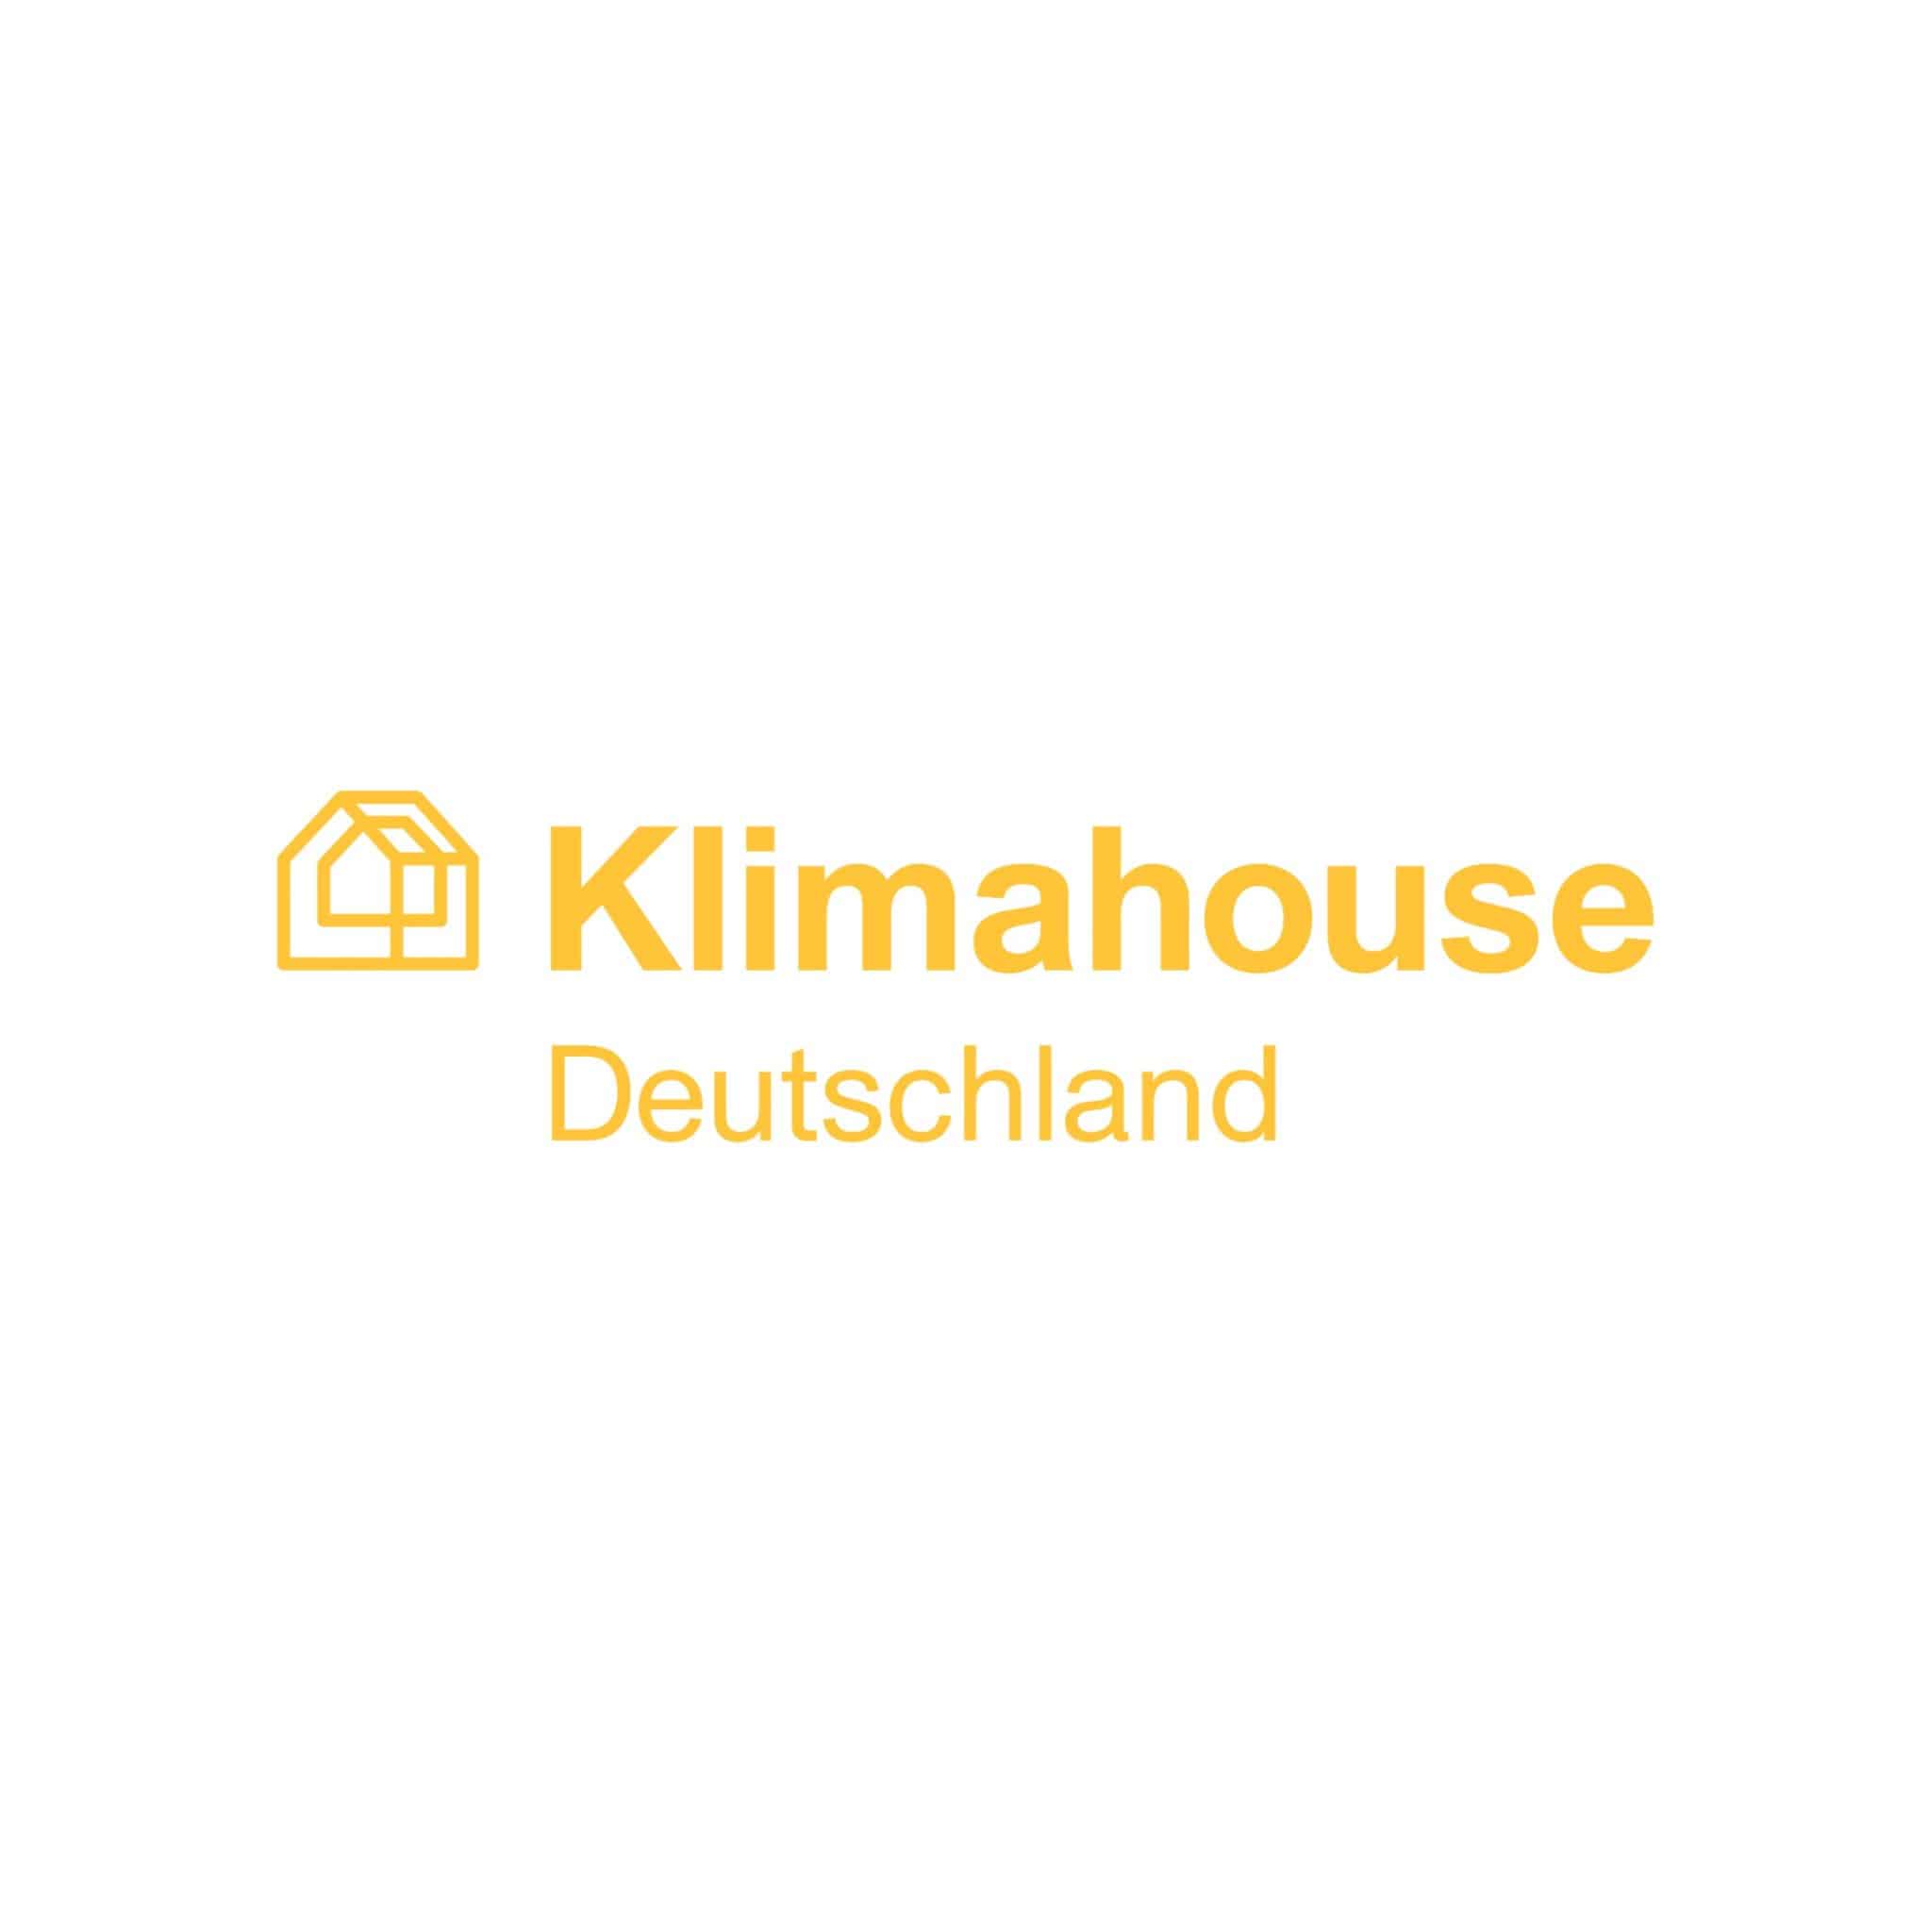 Klimahouse Deutschland Logo